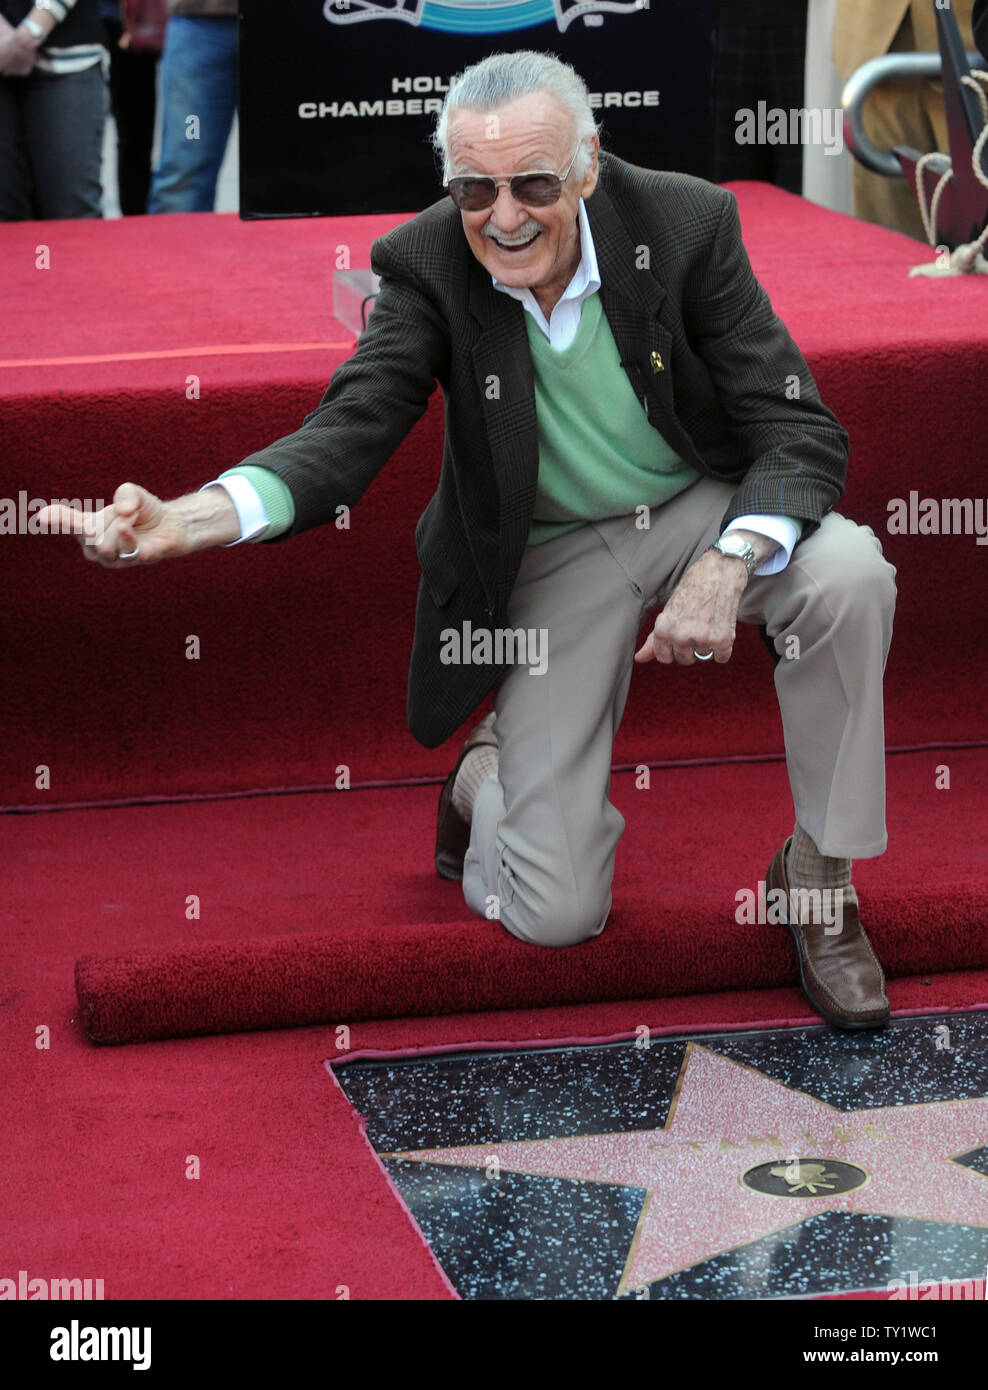 Stan Lee, Schöpfer der Super-Hero Comics 'Spider-Man", "Der unglaubliche Hulk", "X-Men", "Iron Man" und "The Avengers", Streiks den Spiderman posieren für photogaphers nach Erhalt der 2.248 th Stern auf dem Hollywood Walk of Fame bei einer enthüllungsfeier in Los Angeles am 4. Januar 2011. UPI/Jim Ruymen Stockfoto